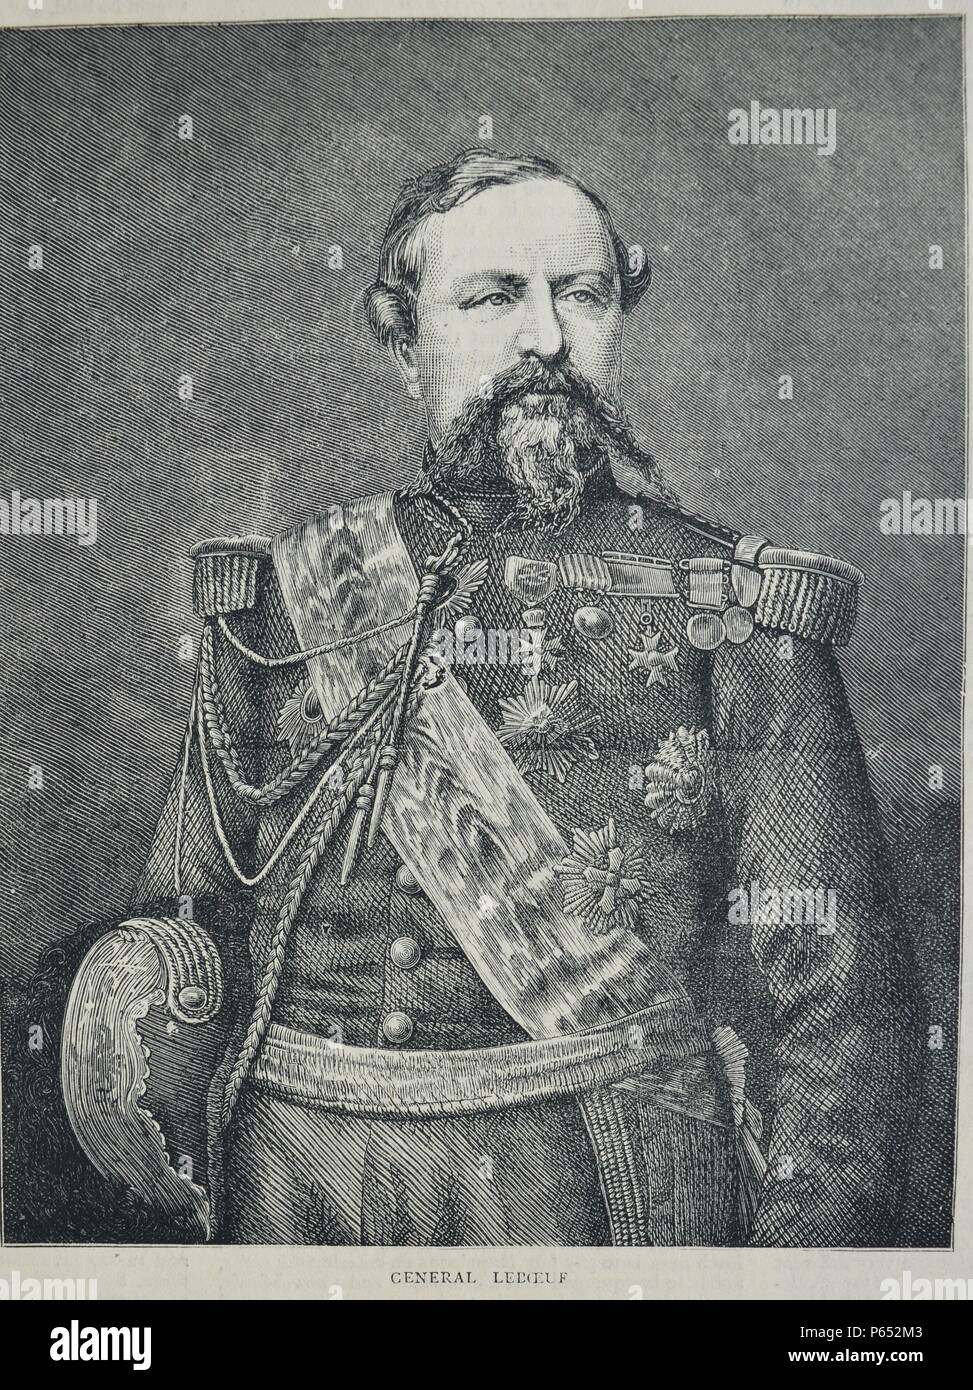 Incisione di generale Edmond Le Boeuf (1809-1888) Un maresciallo di Francia e detenuto in Prussia. Datata 1870 Foto Stock